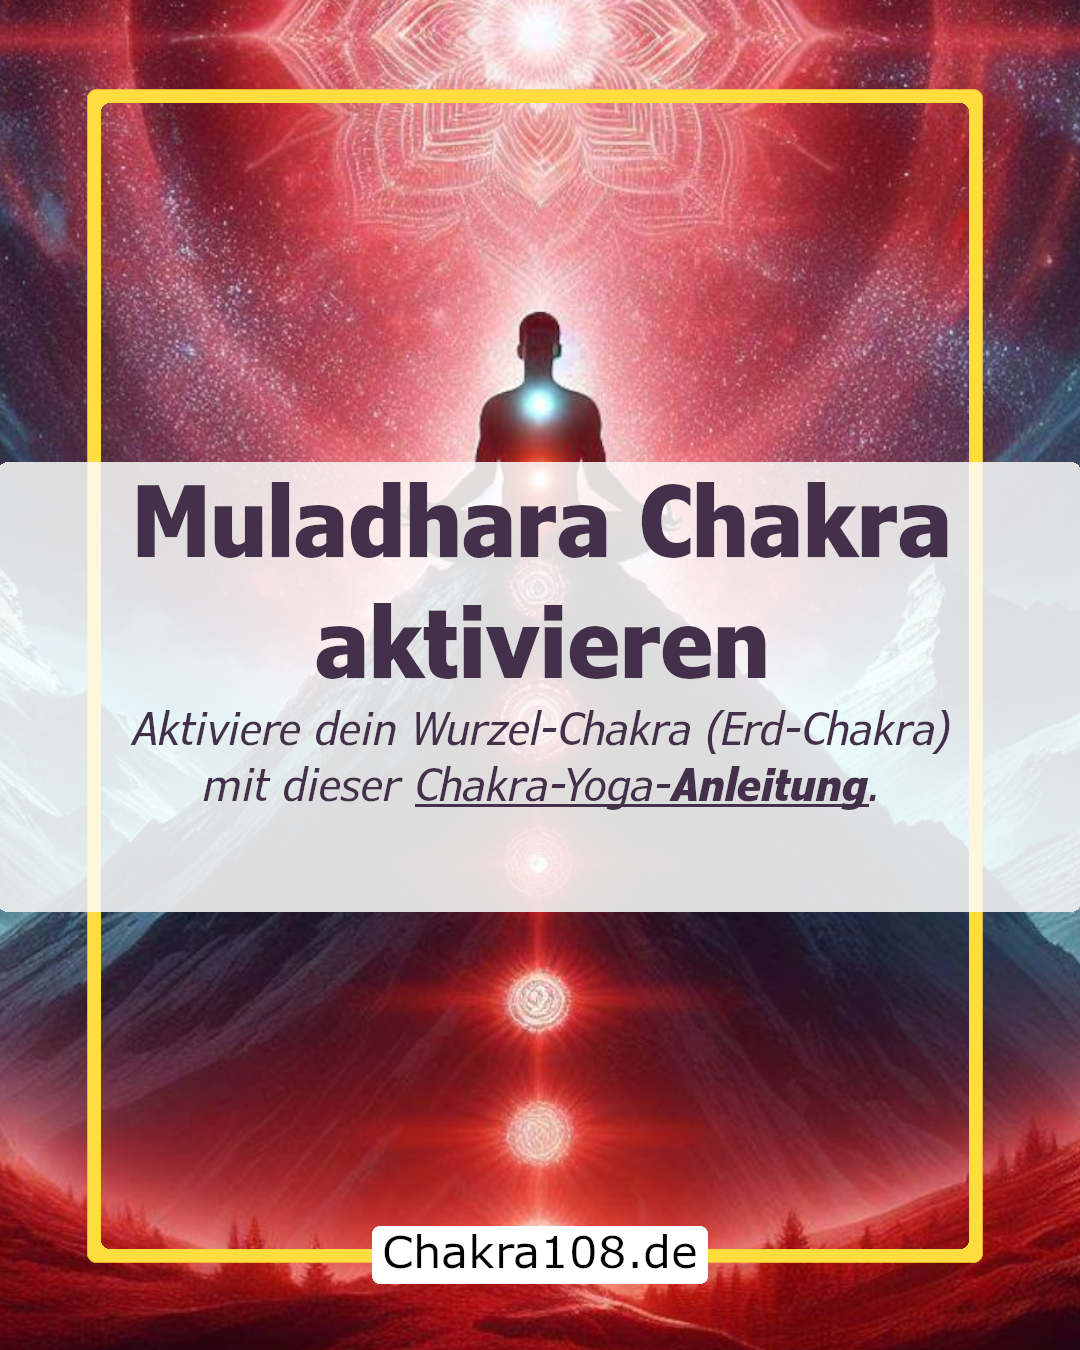 Aktiviere dein Erd-Chakra, Wurzel-Chakra bzw. dein Muladhara-Chakra mit dieser Anleitung aus dem Chakra-Yoga und Meditation.